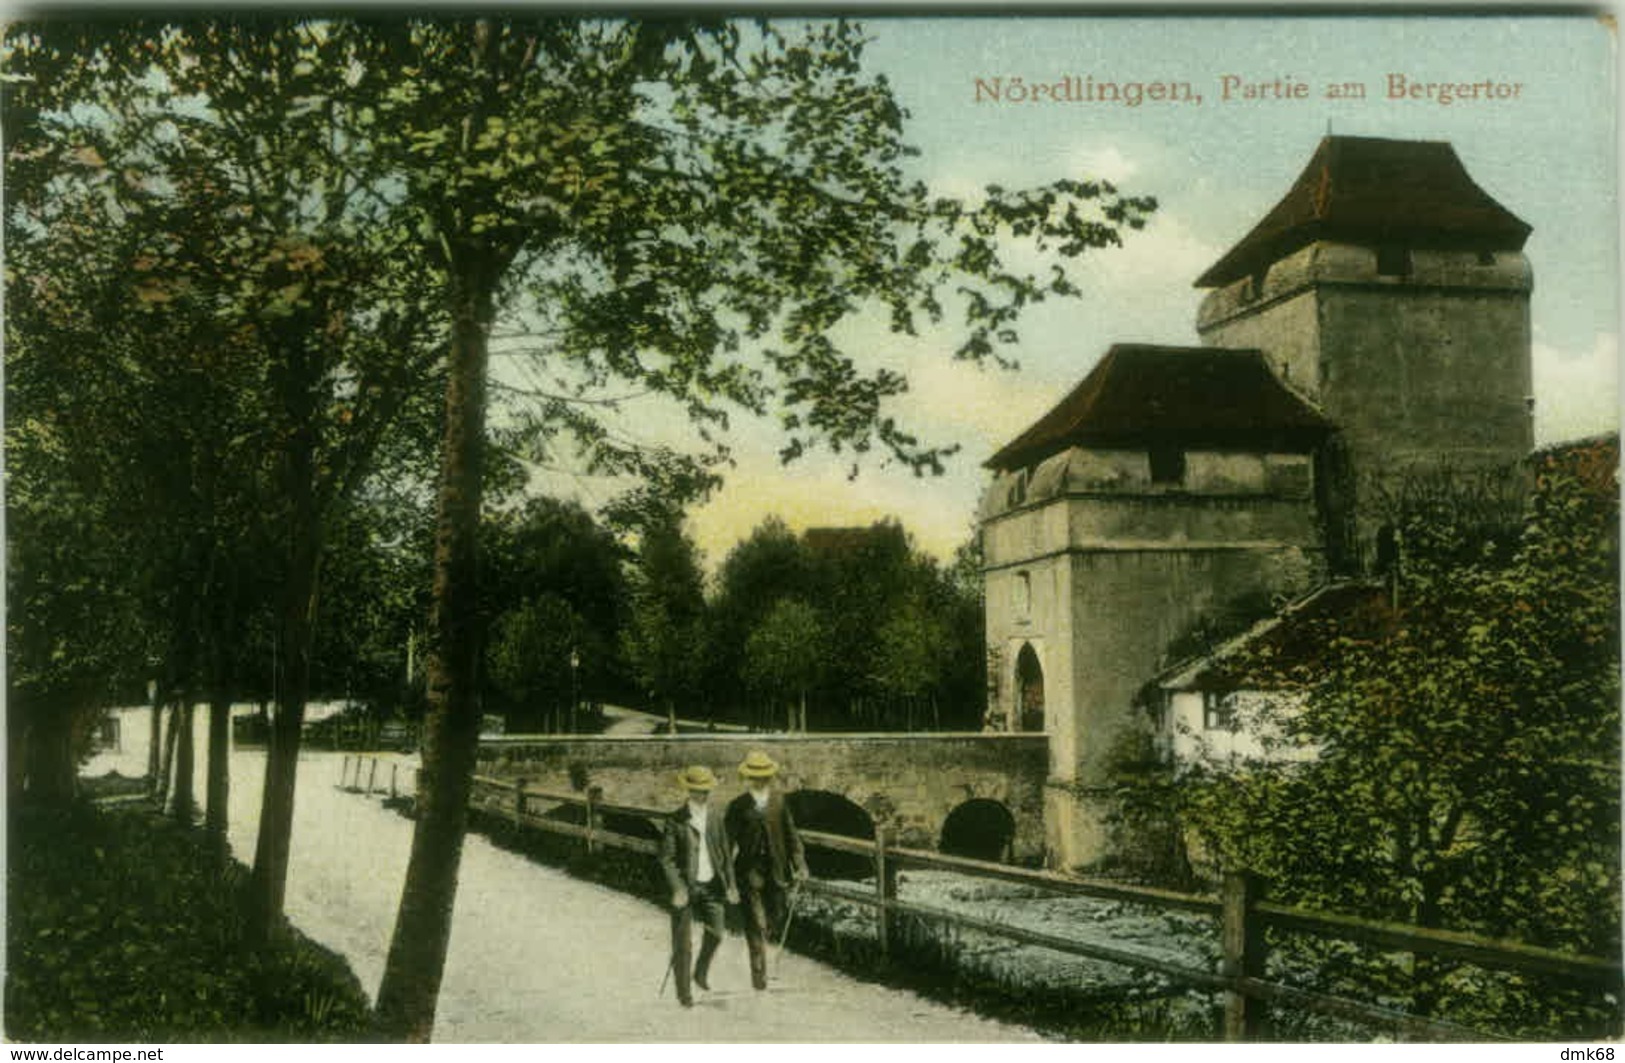 AK GERMANY - Nördlingen / NOERDLINGEN - PARTIE AM BERGERTOR - 1910s (BG5388) - Noerdlingen